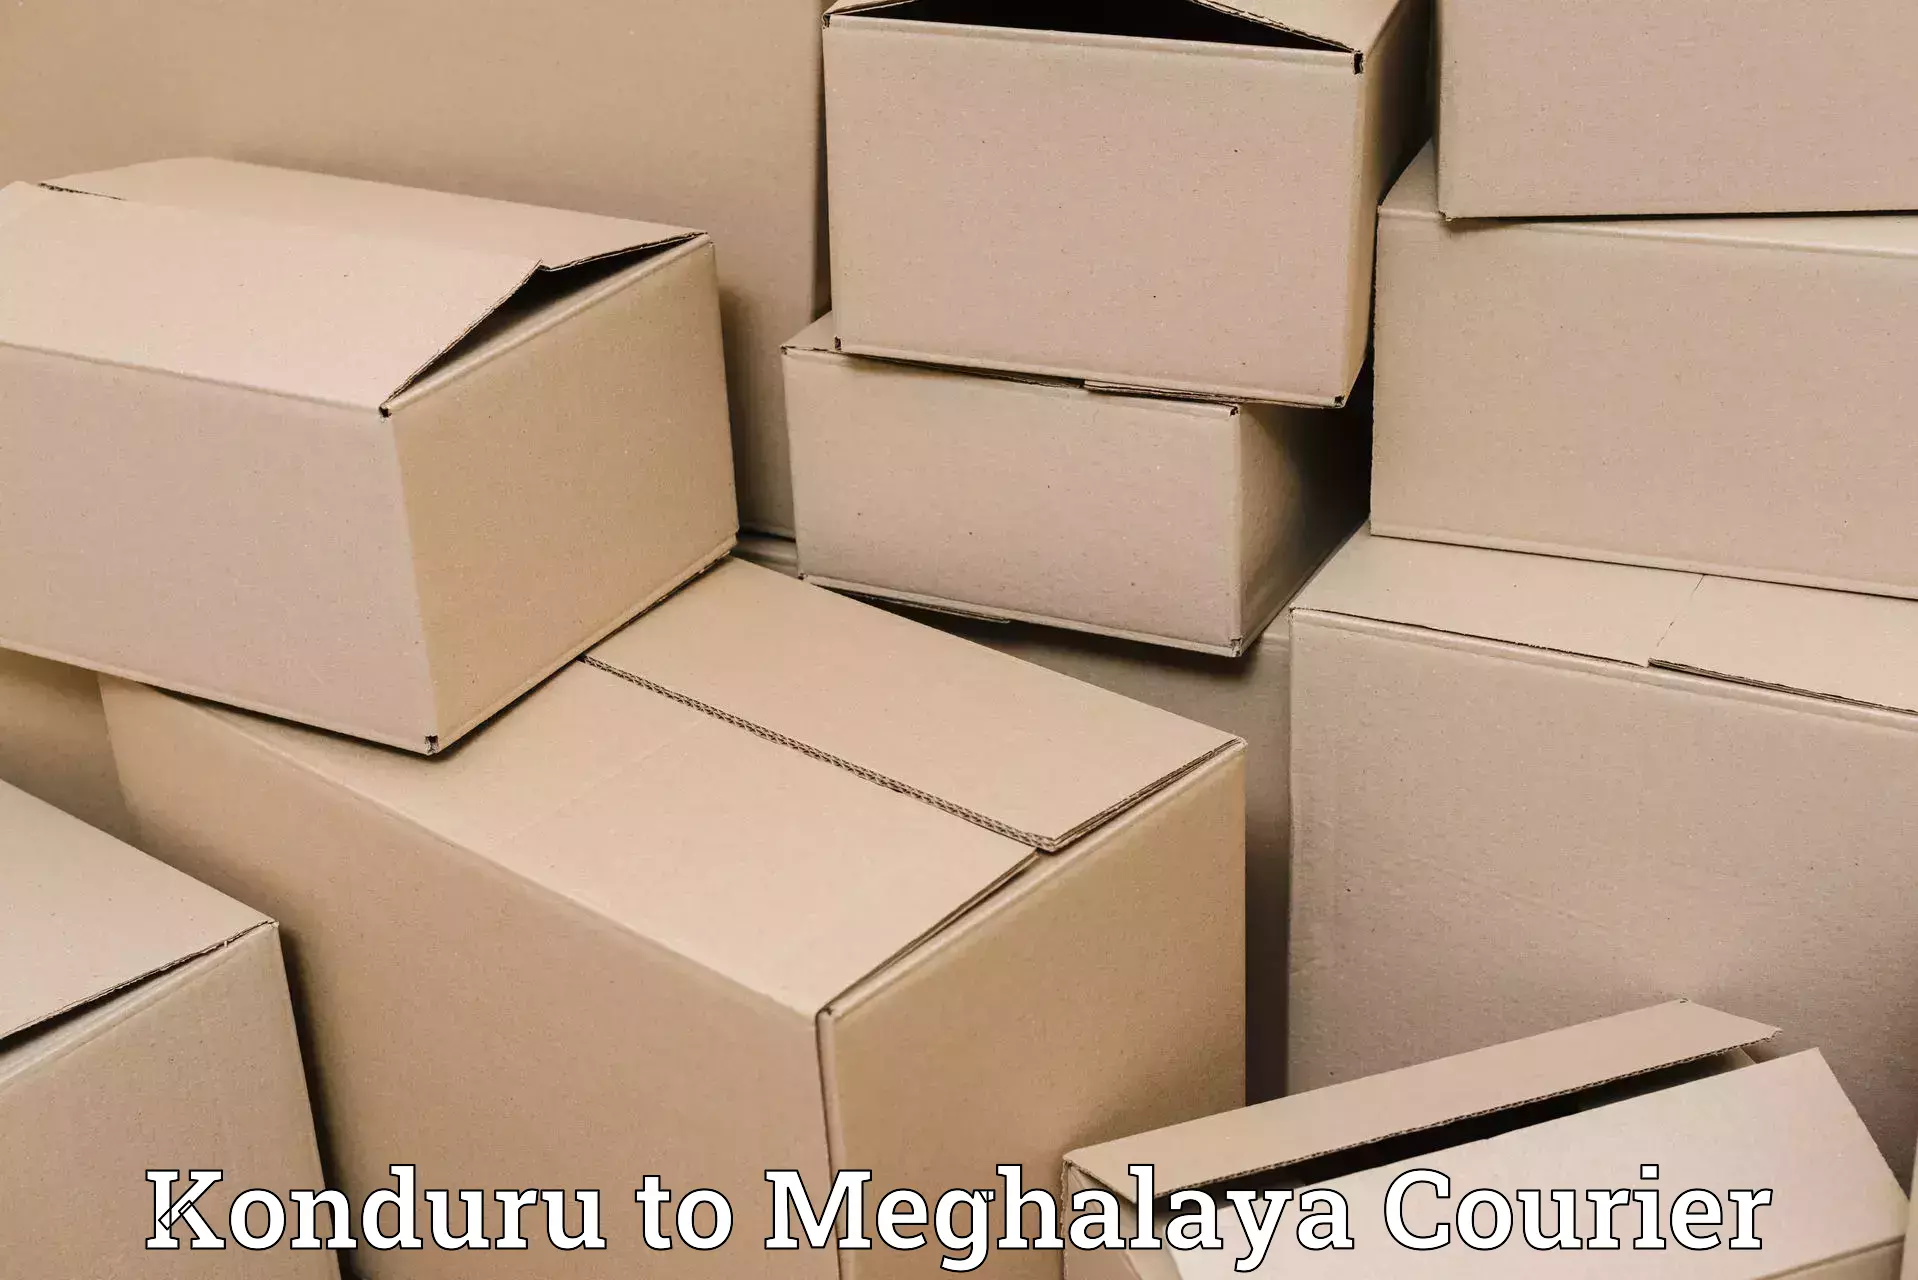 Courier service comparison in Konduru to Shillong